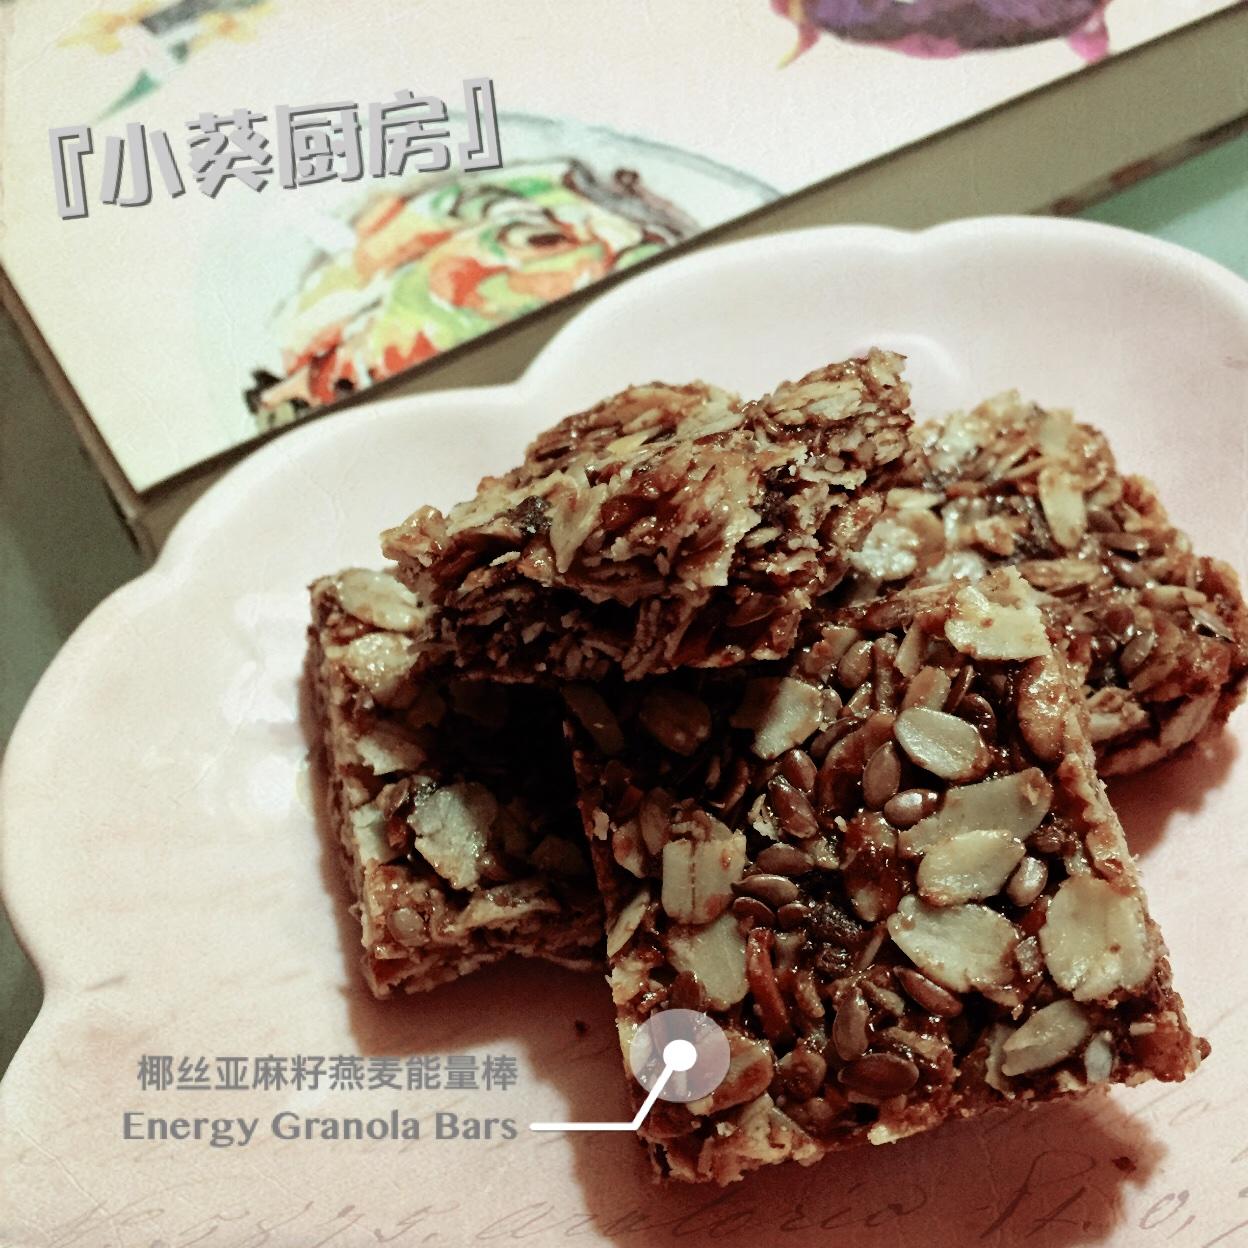 『小葵厨房』
椰丝亚麻籽燕麦能量棒 
Energy Granola bar  
(Coconut Chip Flaxseed)